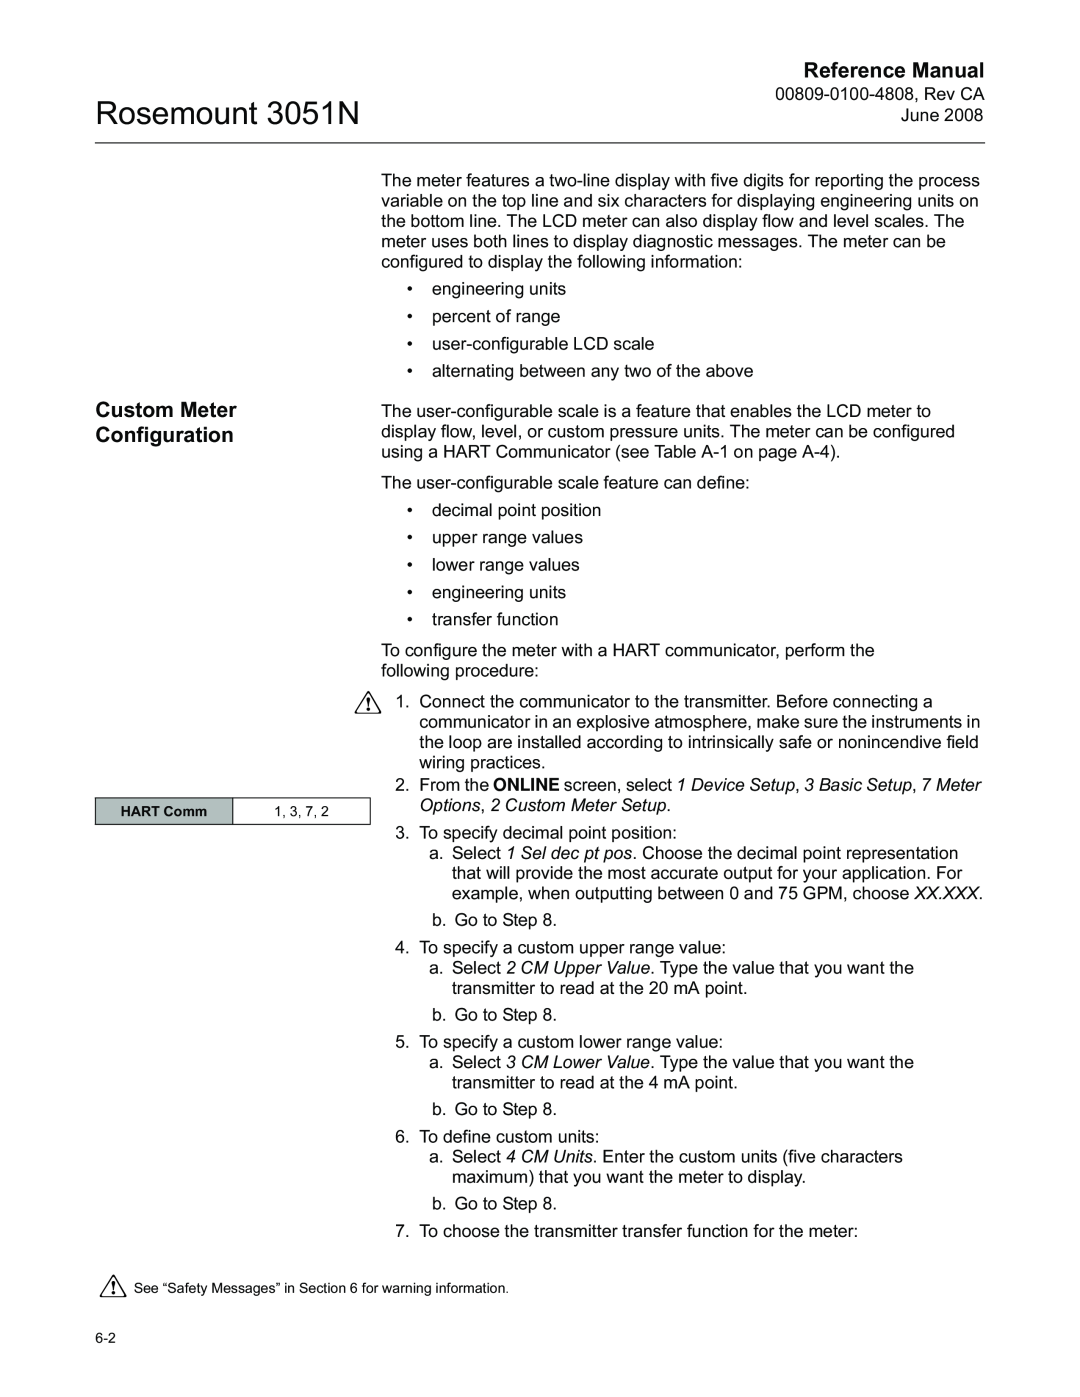 Emerson manual Custom Meter Configuration, Rosemount 3051N, Reference Manual 